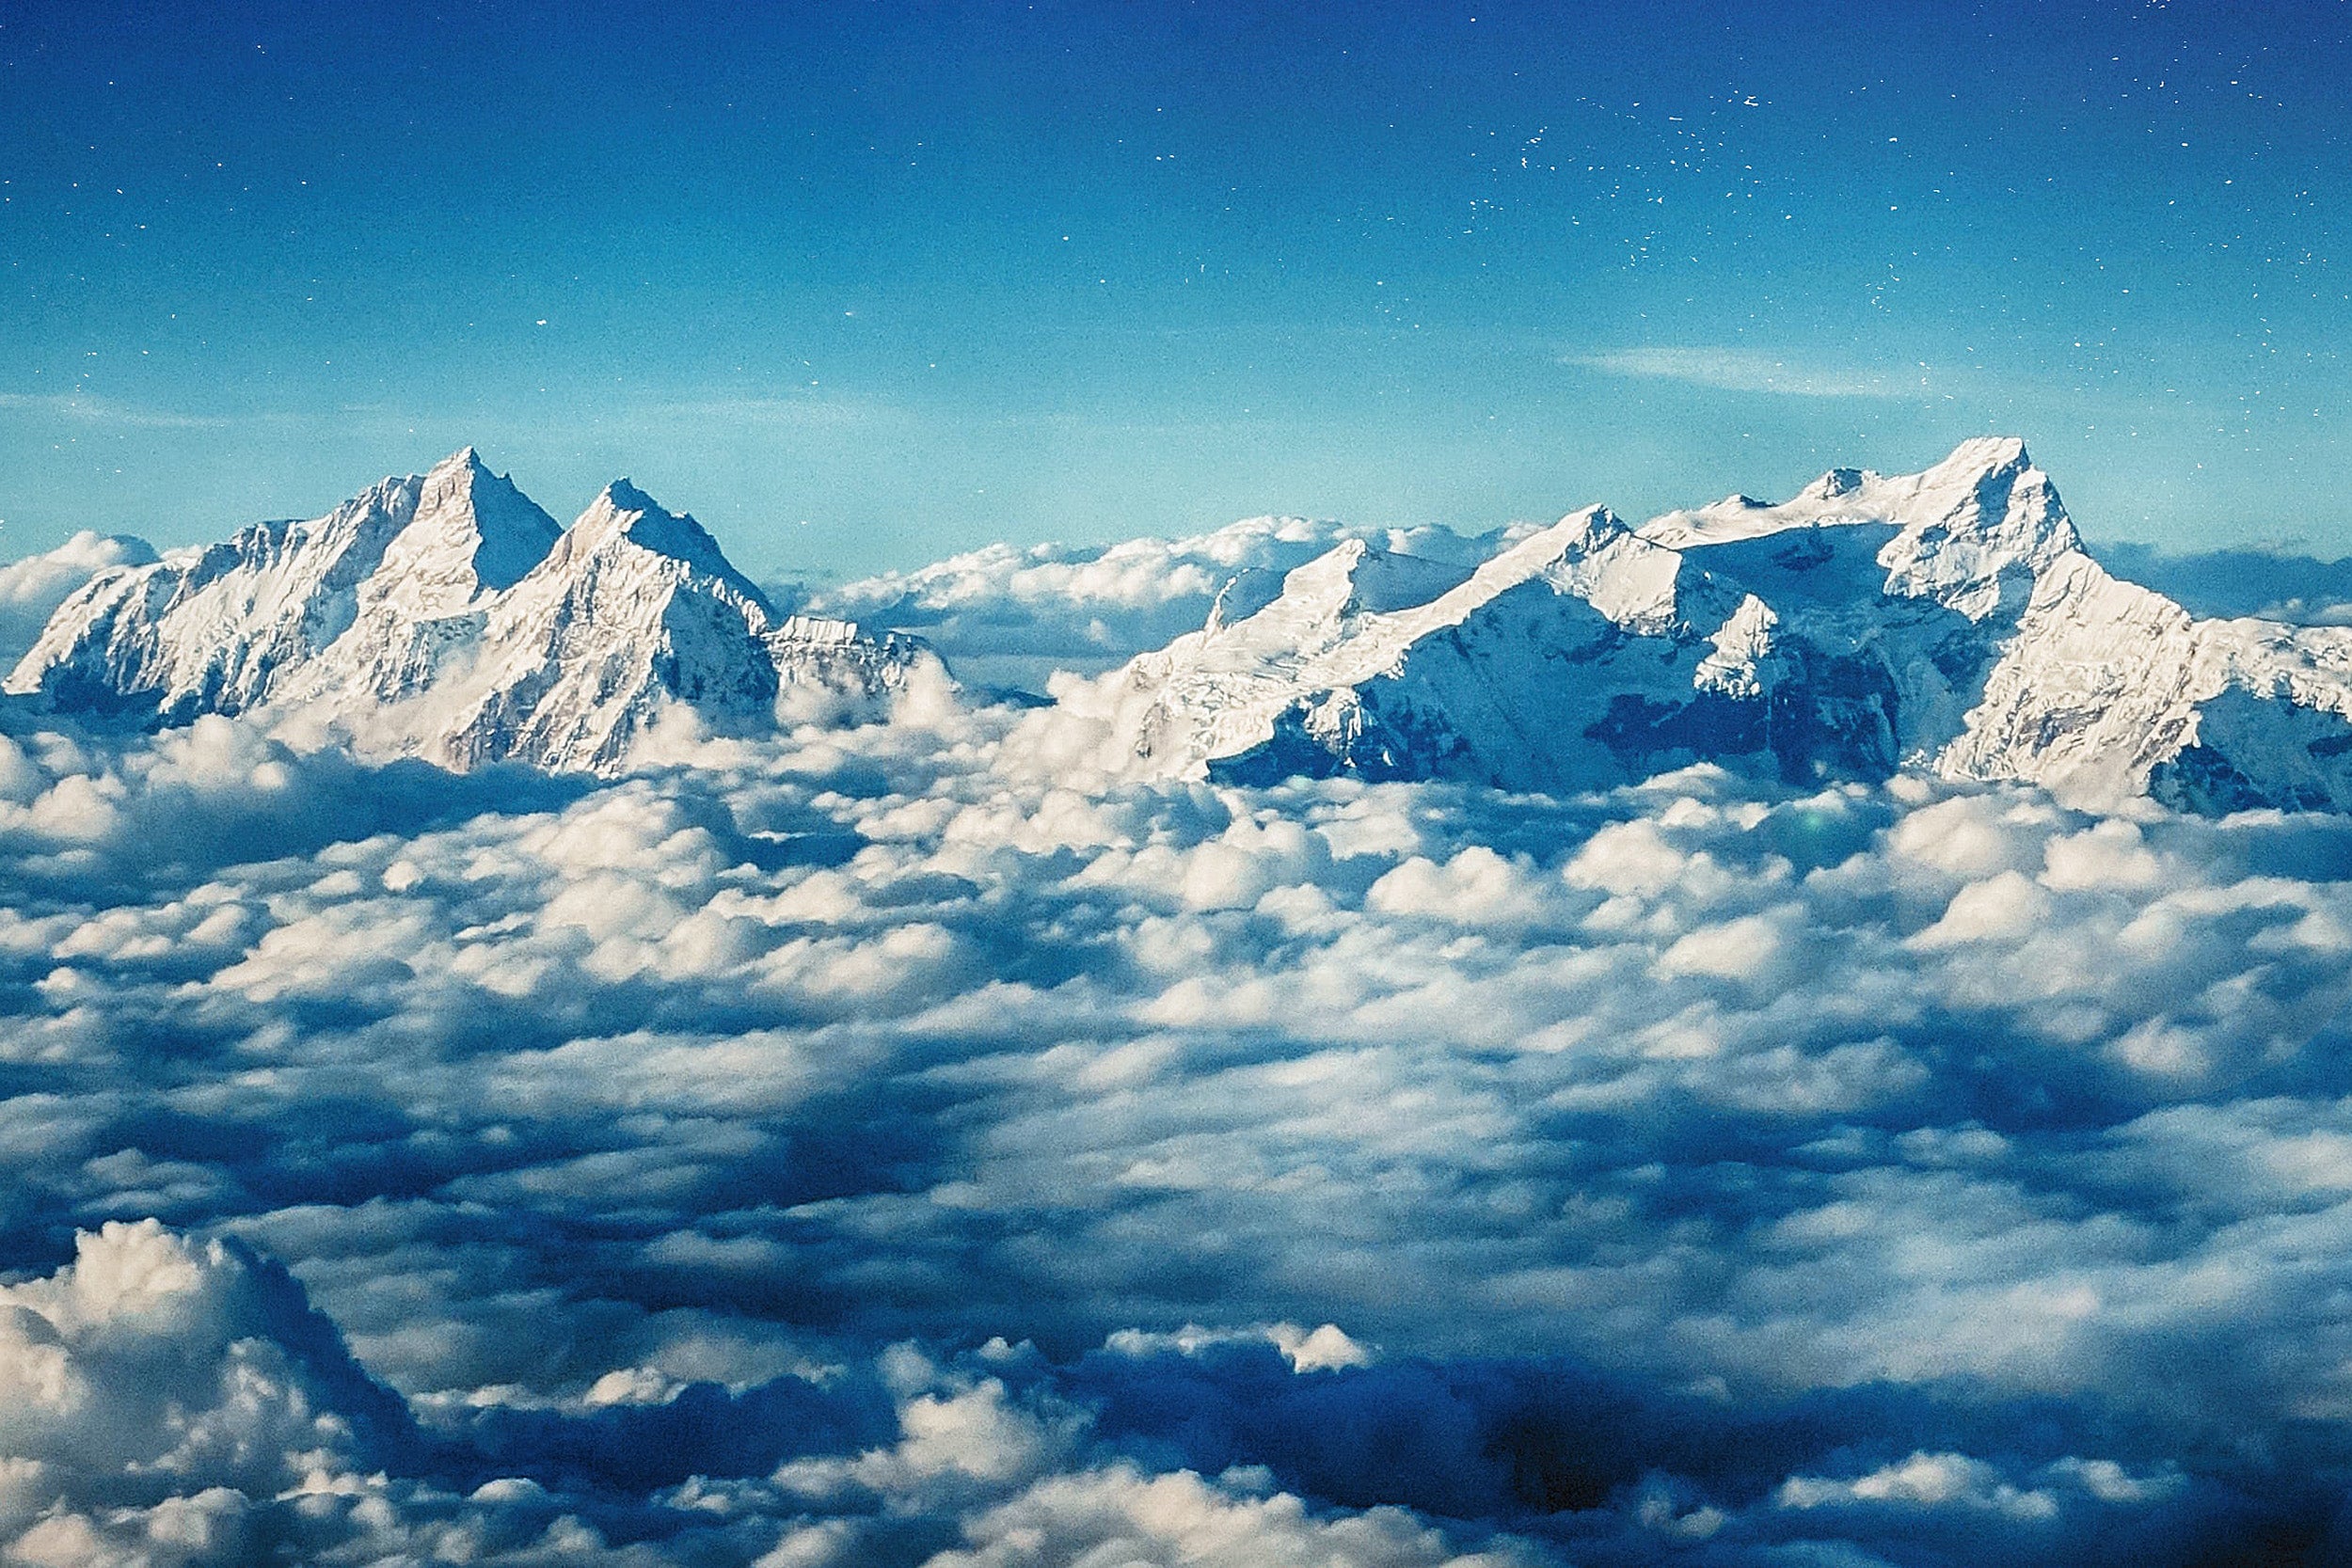 Himalayas.